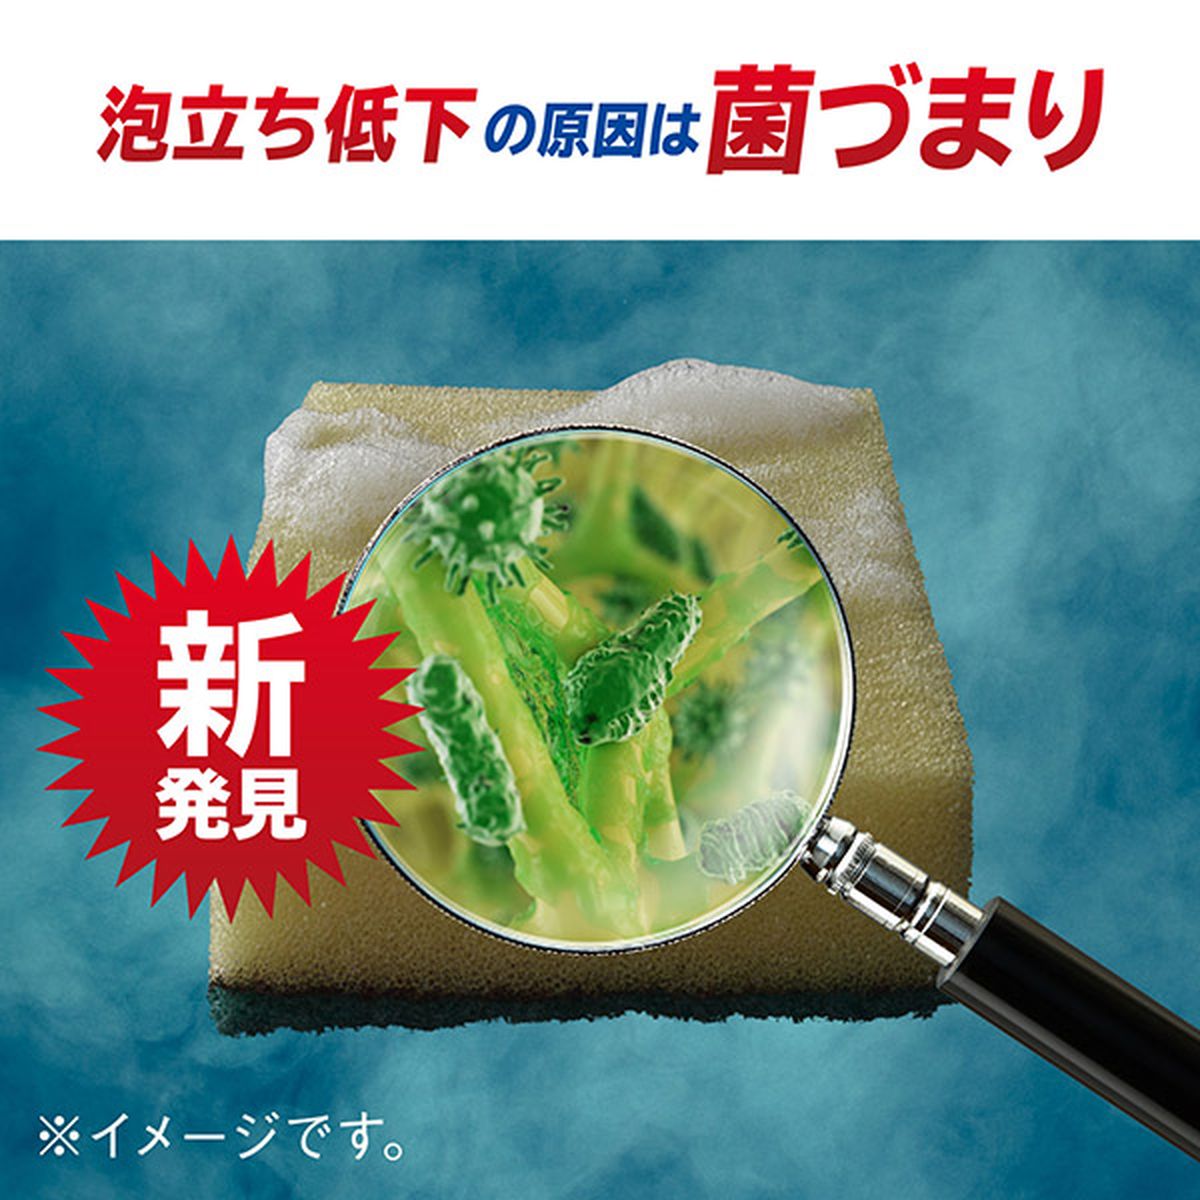 ［在庫限り特価］除菌ジョイ コンパクト 食器用洗剤 緑茶の香り 詰め替え 超特大 960mL